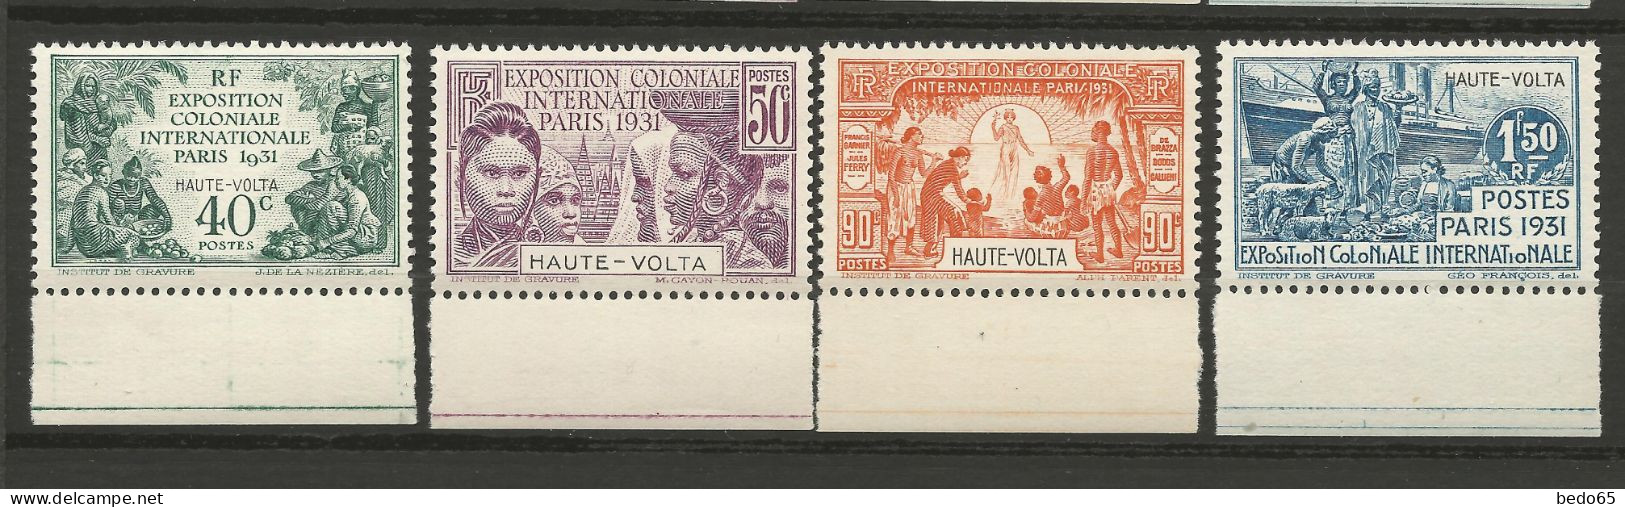 HAUTE-VOLTA EXPO COLONIALE 1931 Série Complète N° 66 à 69 BDF NEUF** LUXE SANS CHARNIERE / Hingeless  / MNH - Neufs